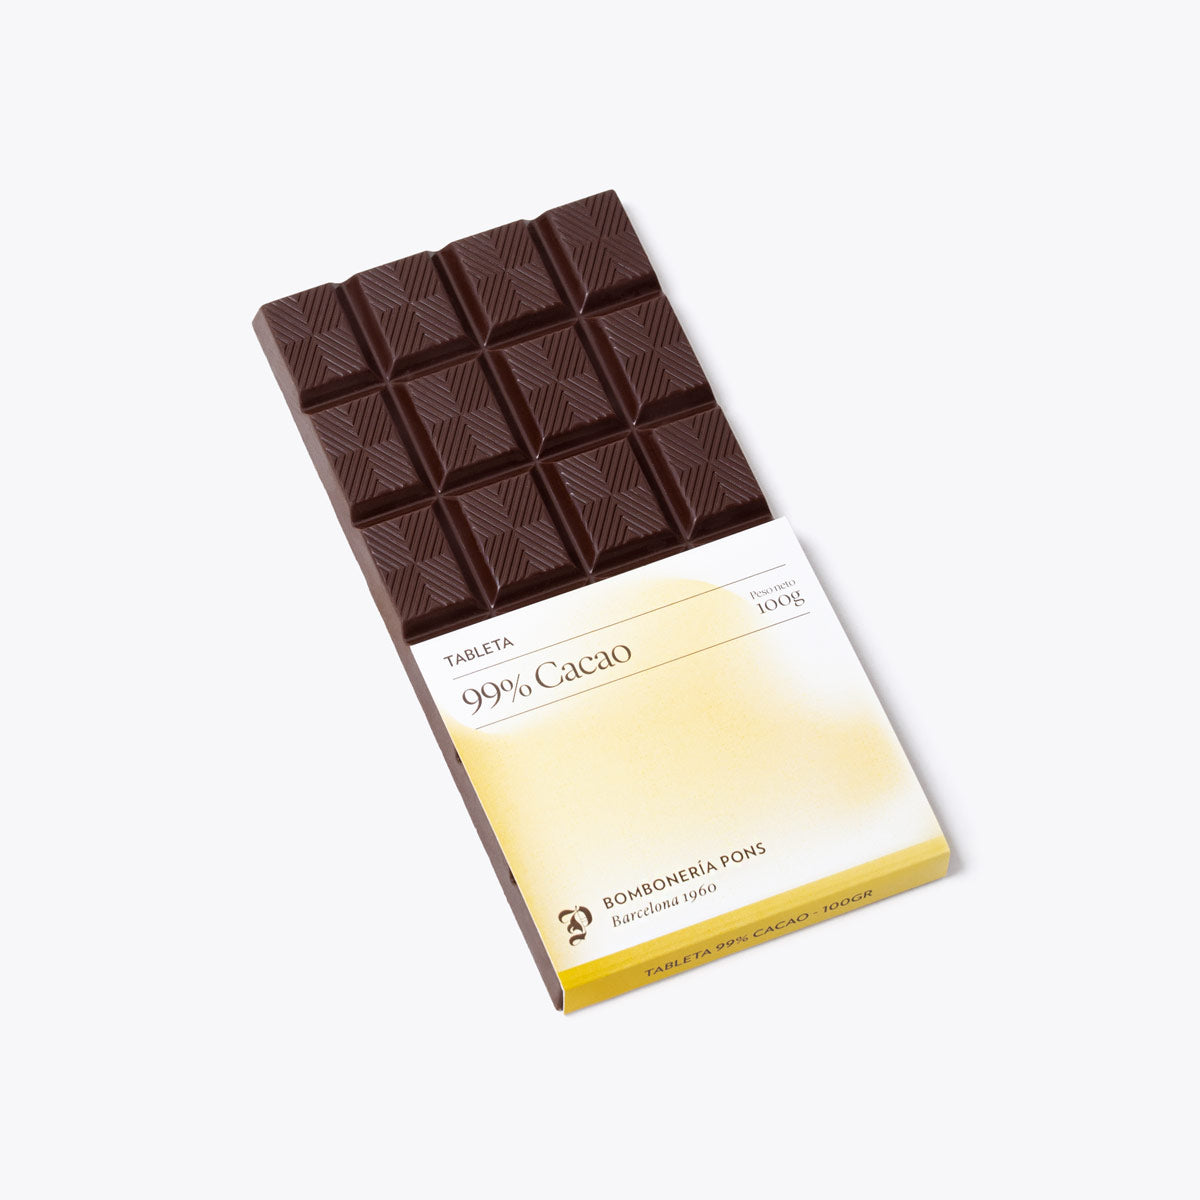  Tableta 99% Cacao - 100g